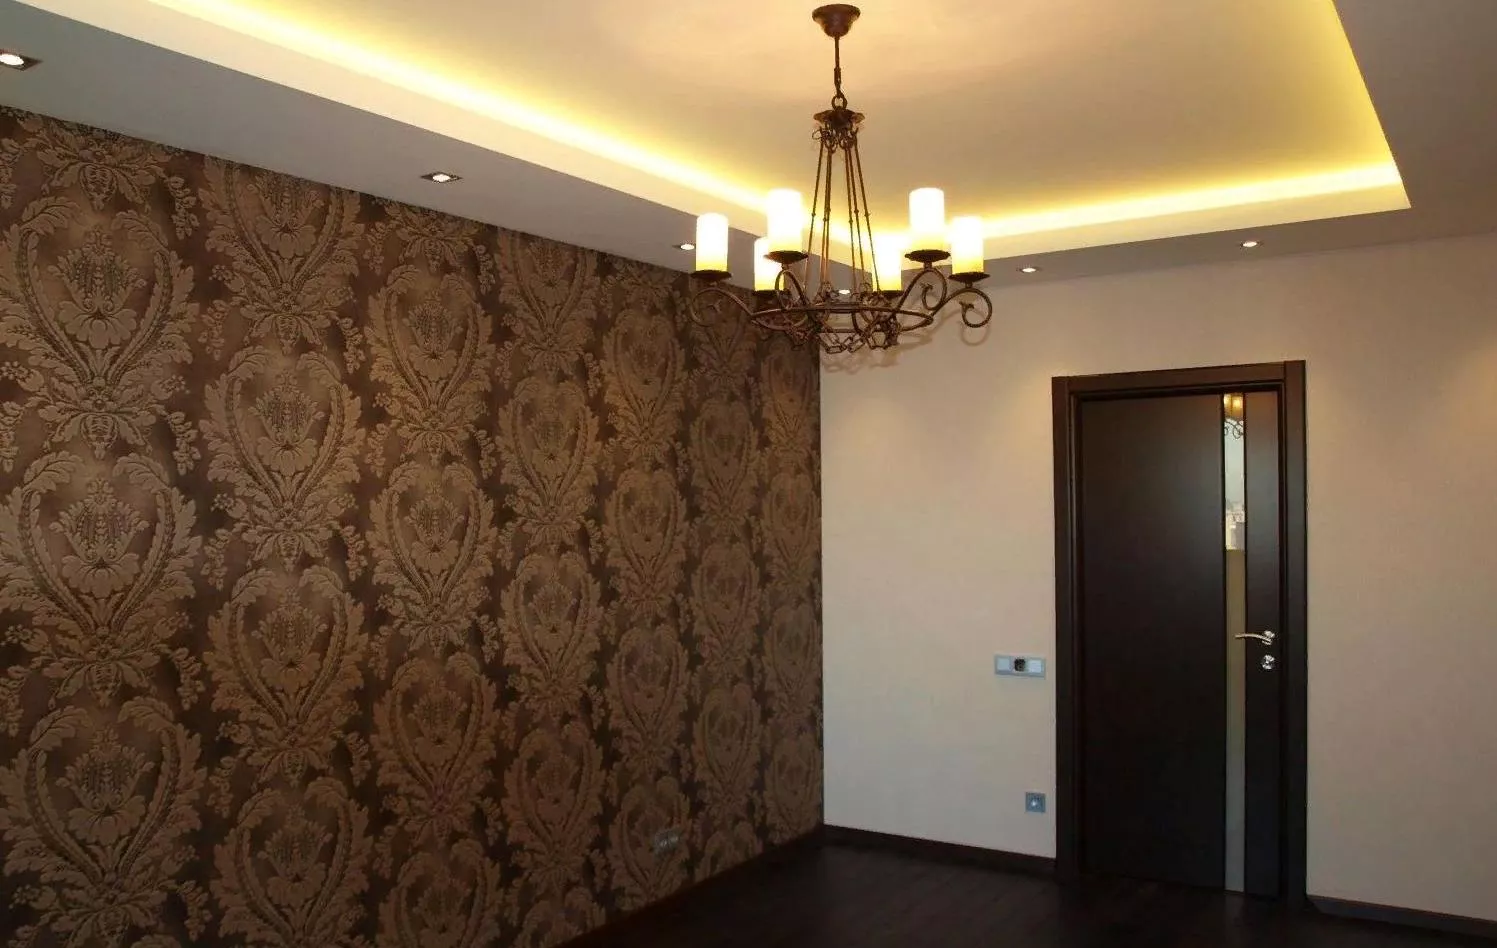 Дизайнерский ремонт квартир в Москве под ключ цена от руб за 1 м2